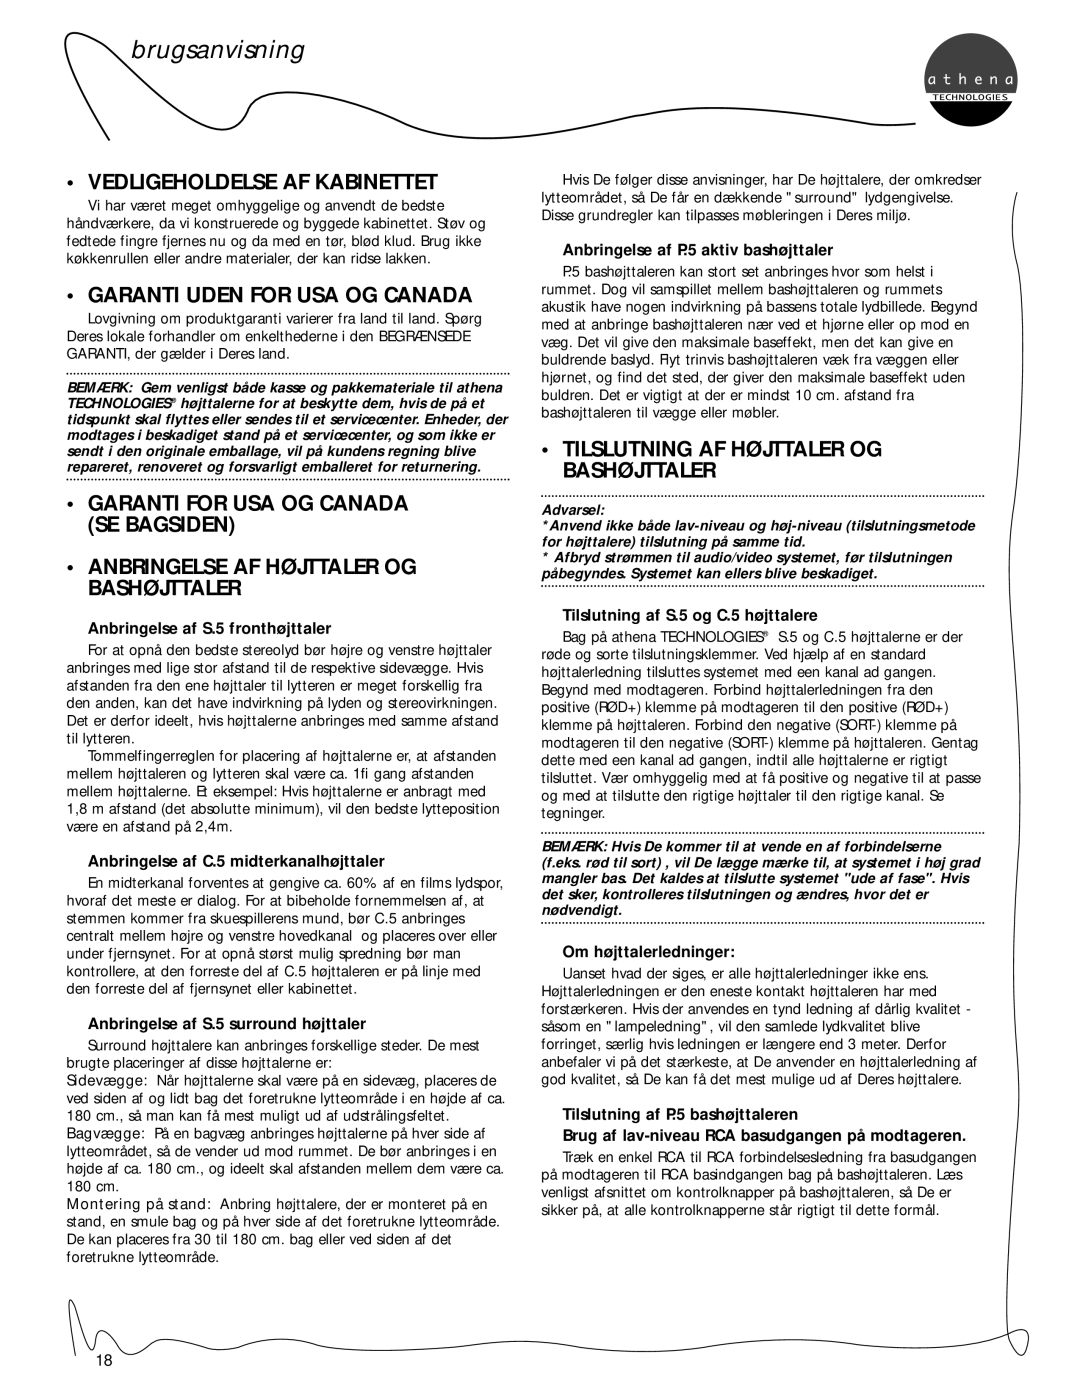 Athena Technologies P.5, C.5, S.5 owner manual Vedligeholdelse Af Kabinettet, Garanti Uden For Usa Og Canada, brugsanvisning 